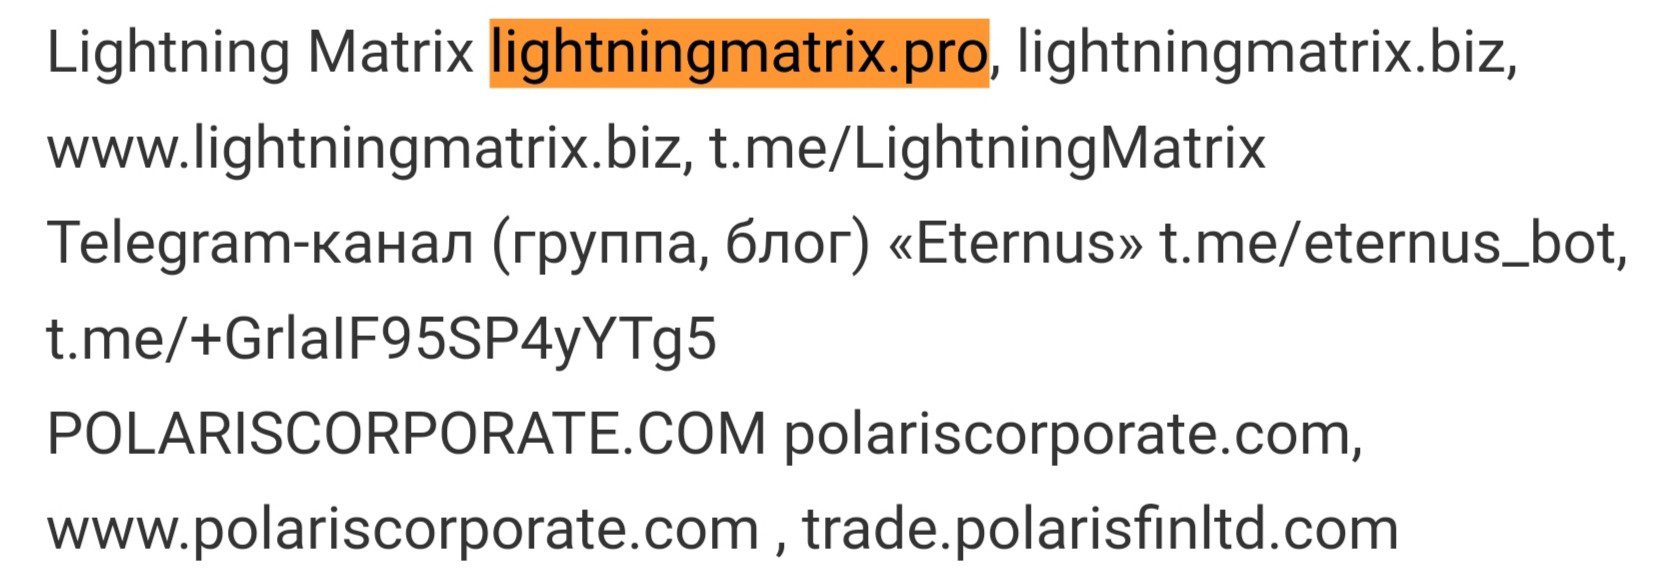 Отзывы о Lightning Matrix